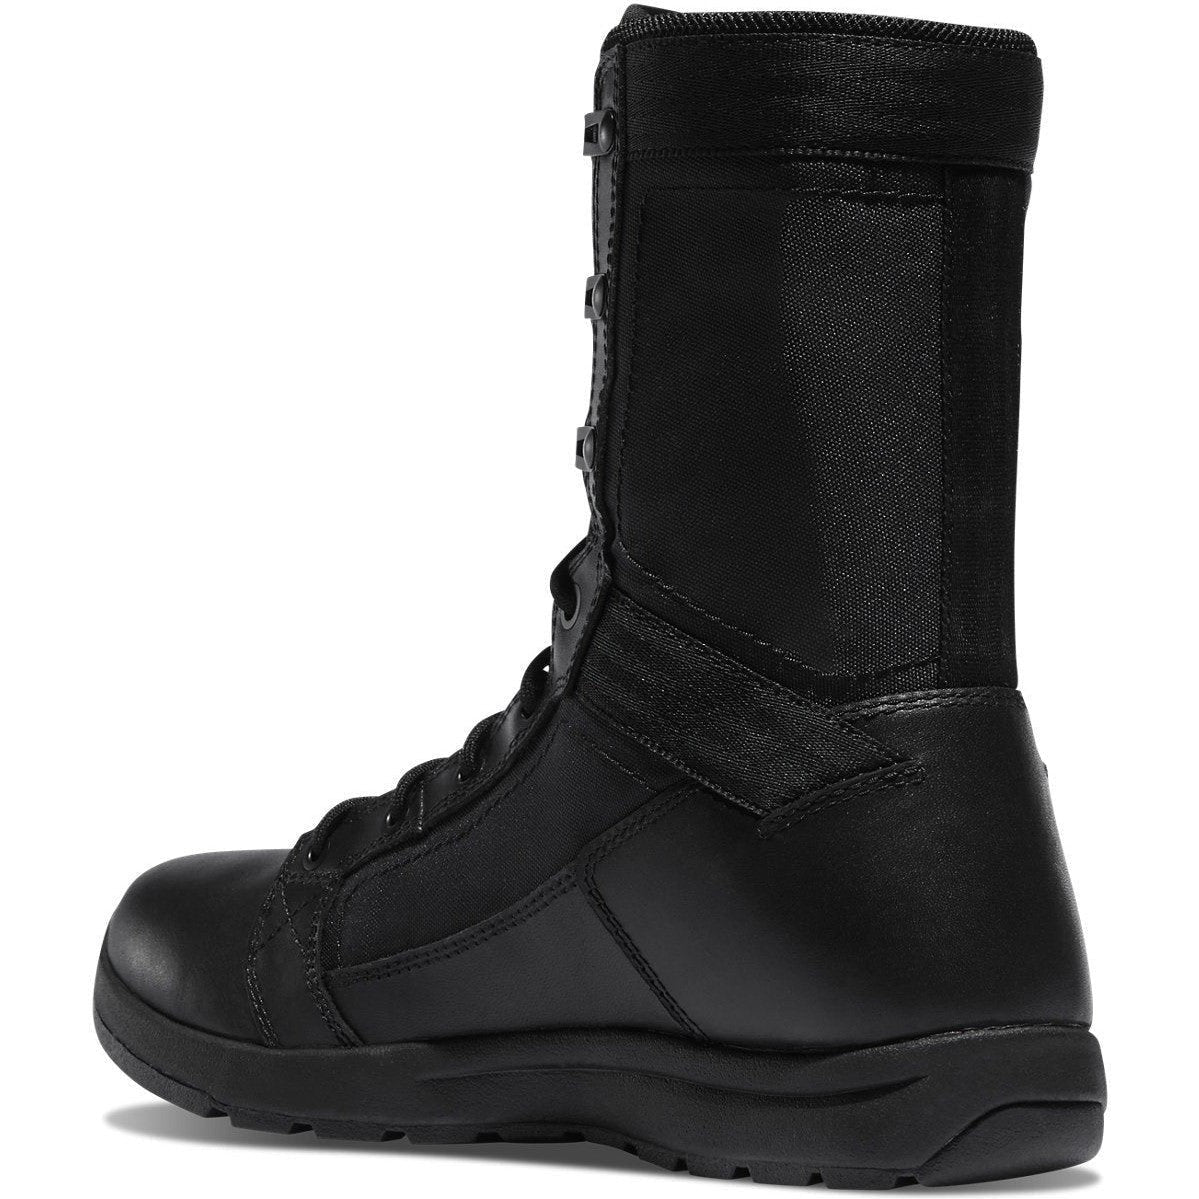 Danner Men's Tachyon 8" Duty Boot - Black - 50124  - Overlook Boots